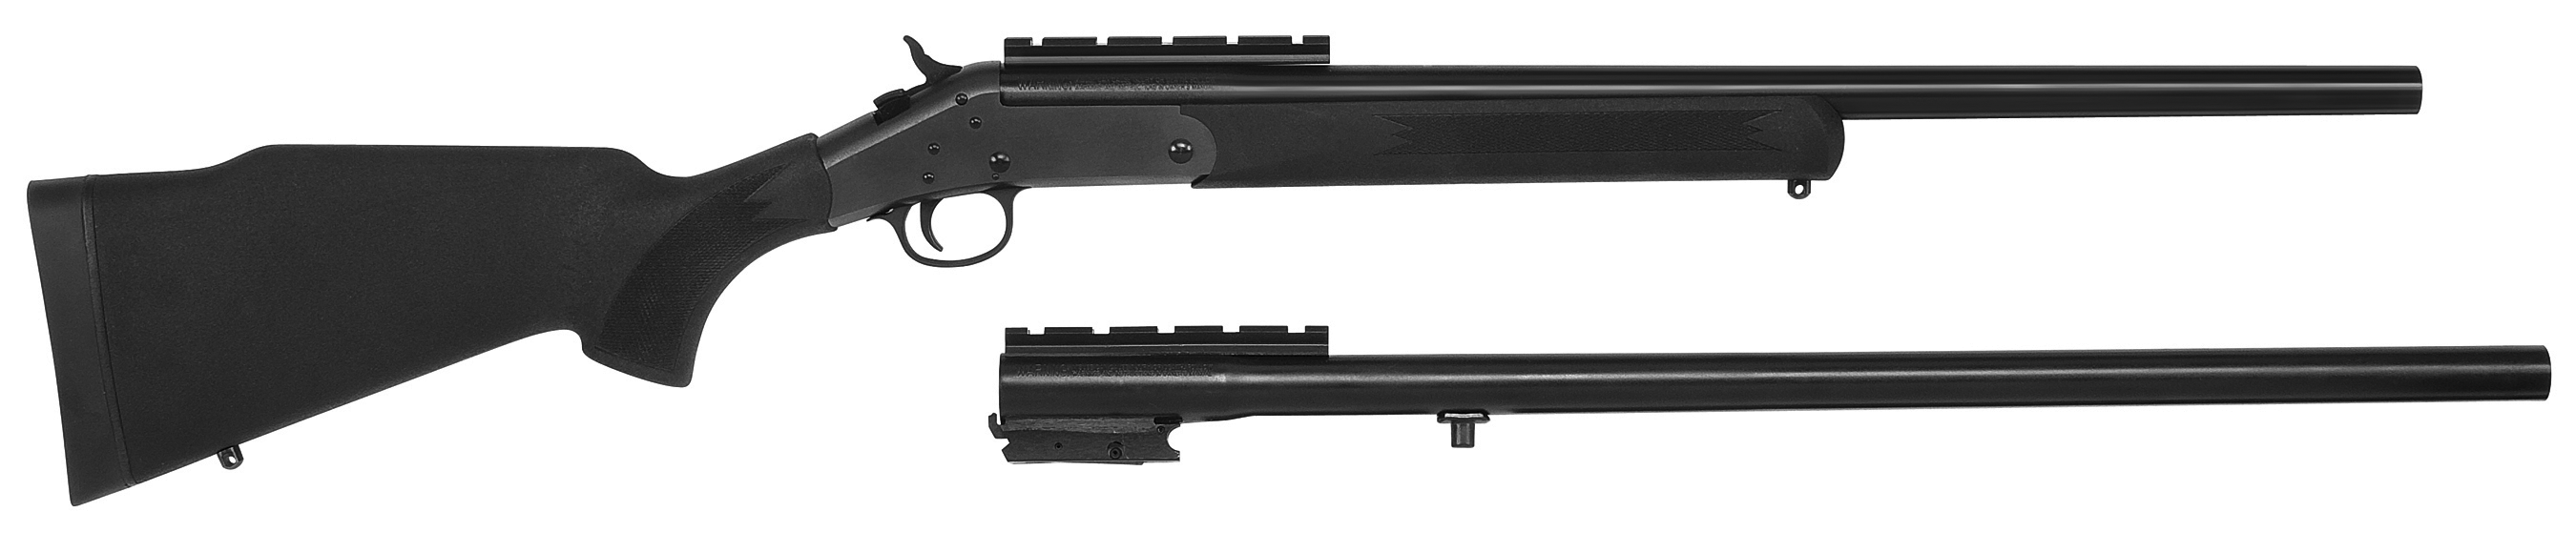 Synthetic Handi-Rifle/Slug Gun Combo